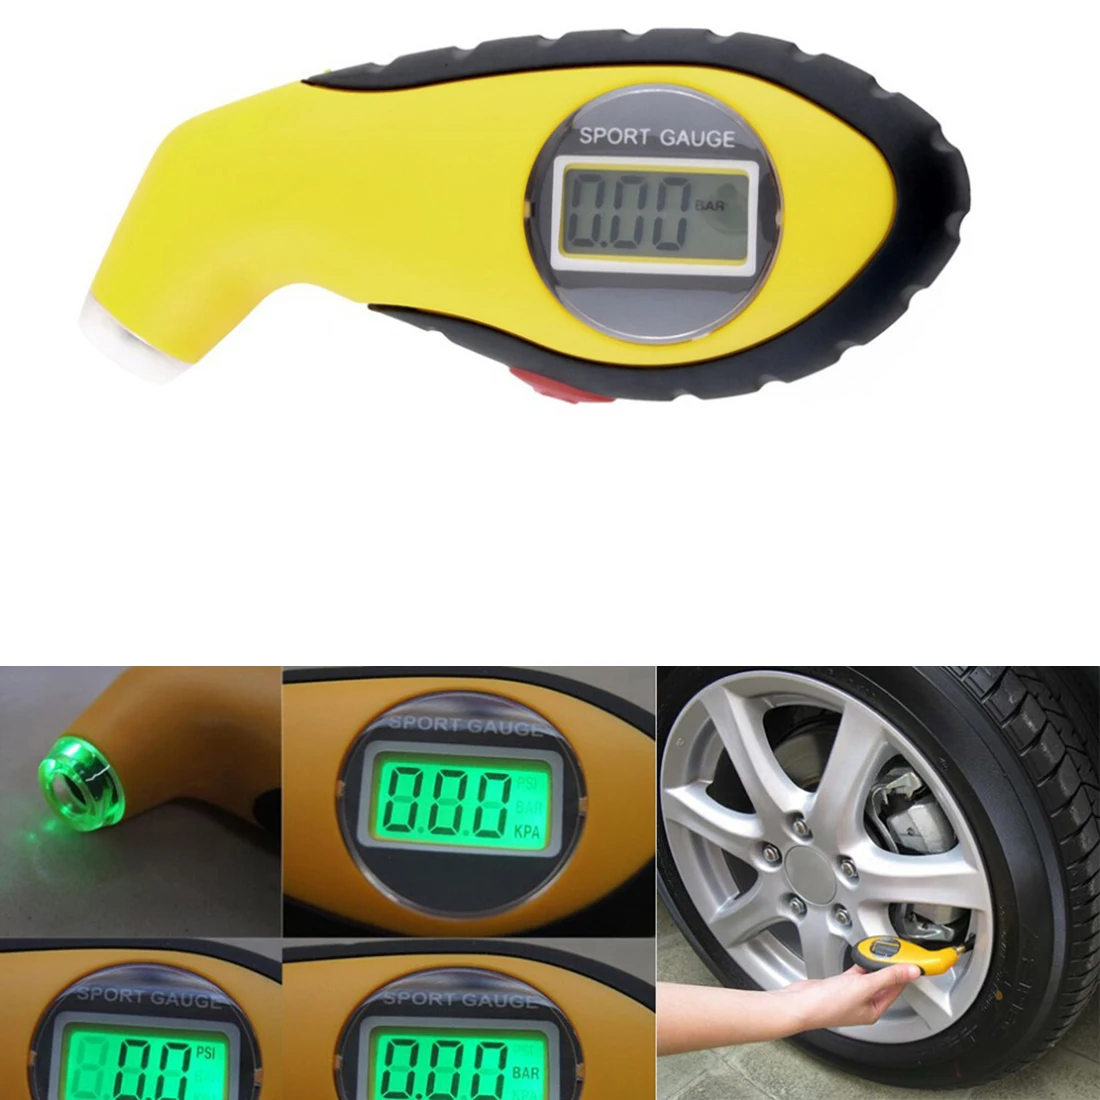 Мини ЖК-экран цифровой датчик давления воздуха в шинах манометр барометры тестер инструмент для автомобиля авто мотоцикл велосипед